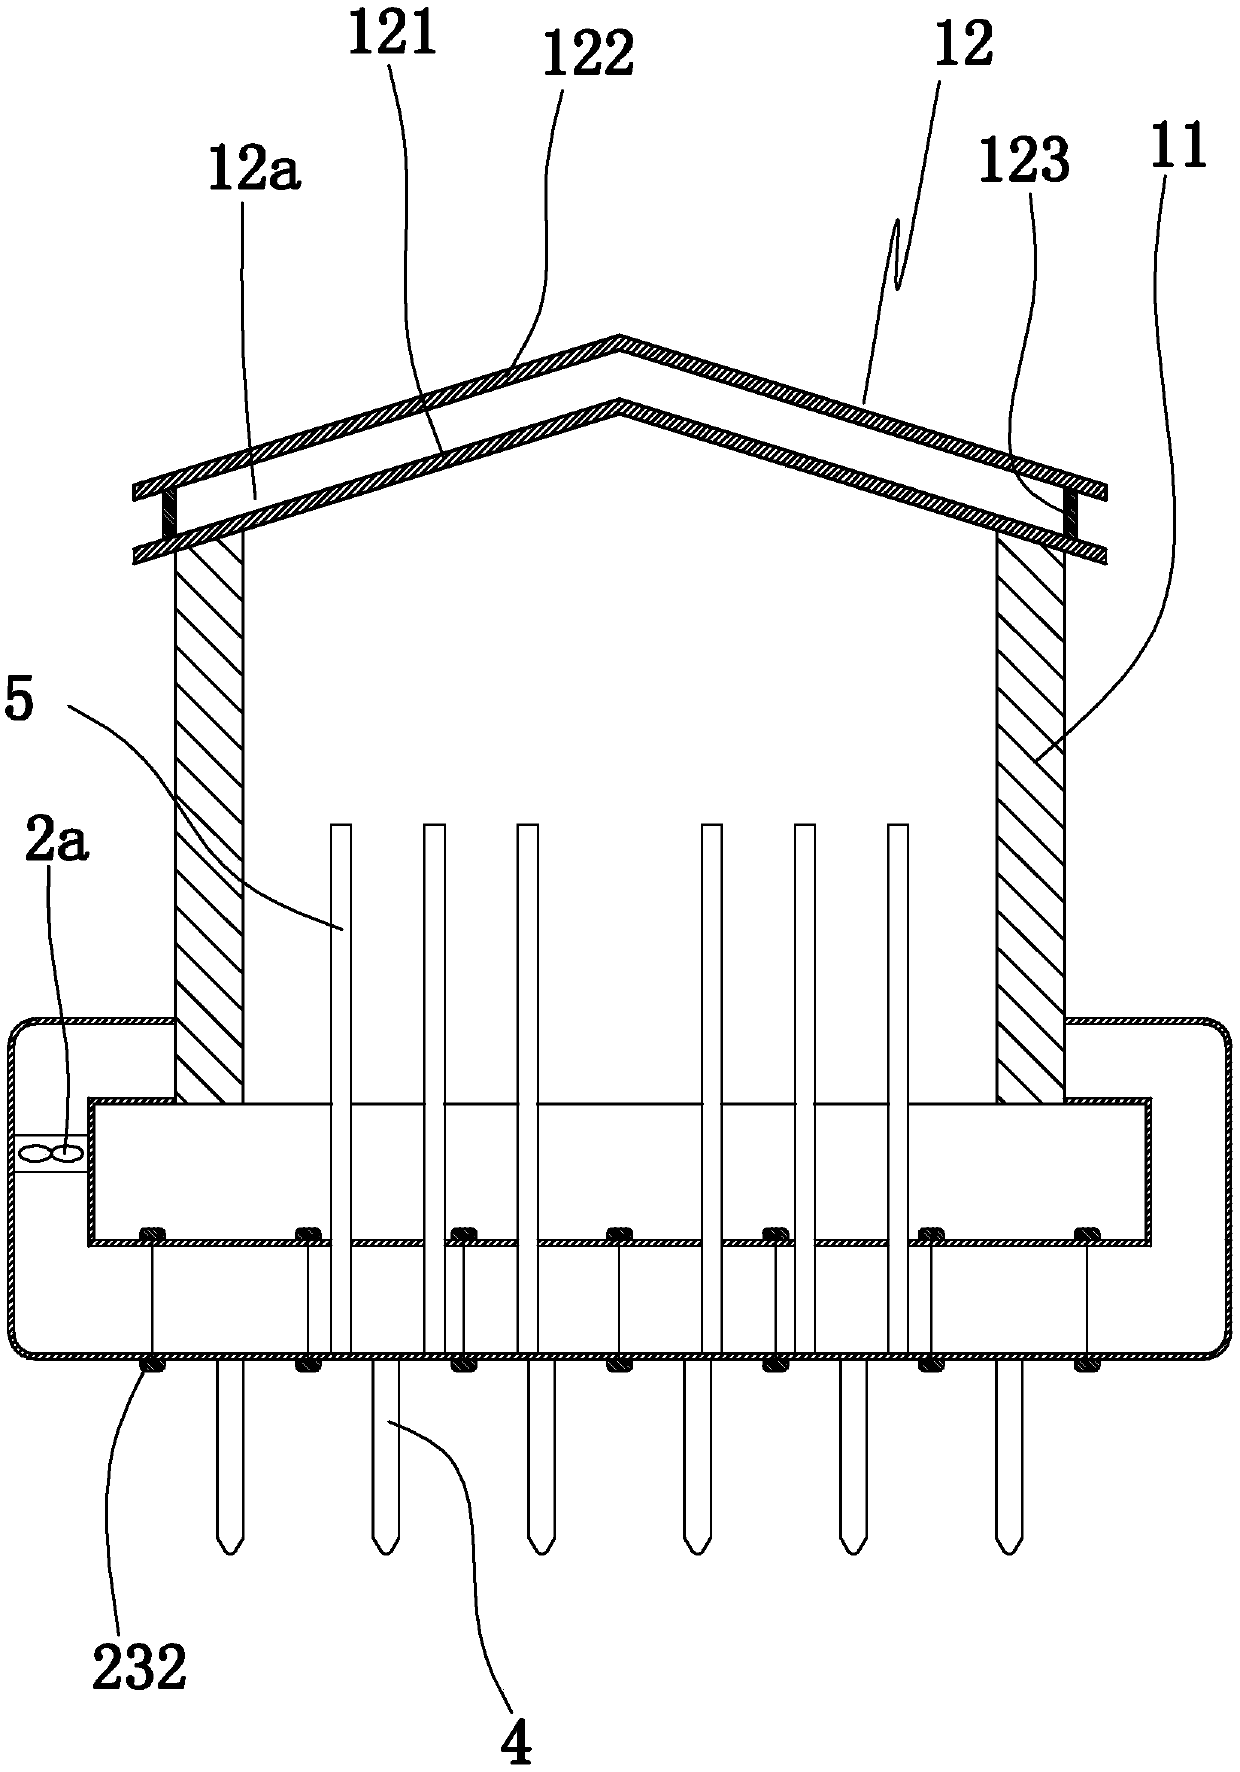 A granary uniform temperature control temperature cooling system